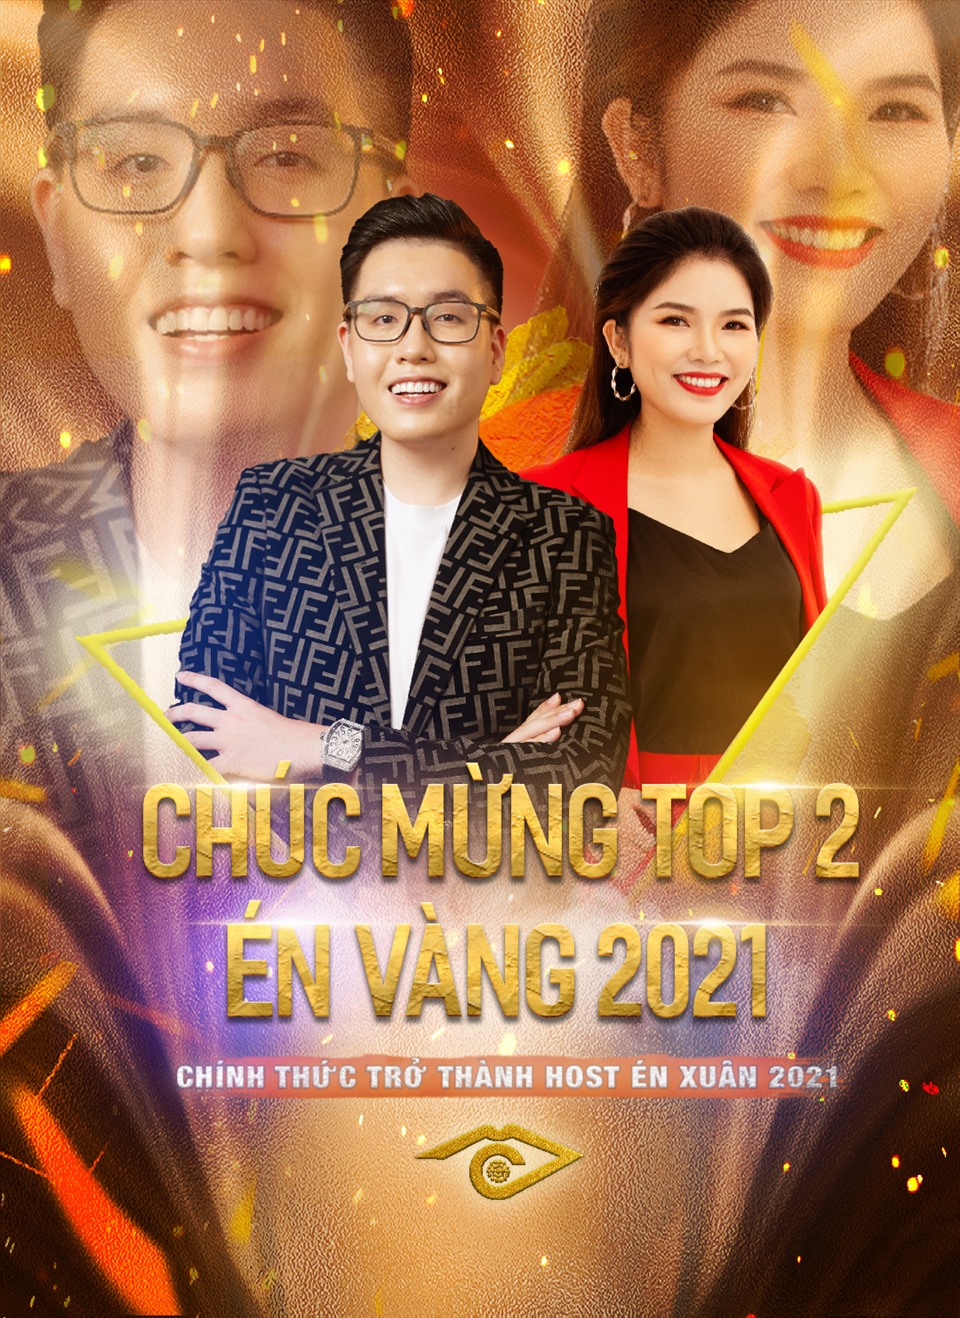 Nam Linh và Kim Liên xuất sắc lọt Top 2 để tranh tài đêm chung kết xếp hạng “Én vàng 2021“. Ảnh: NVCC